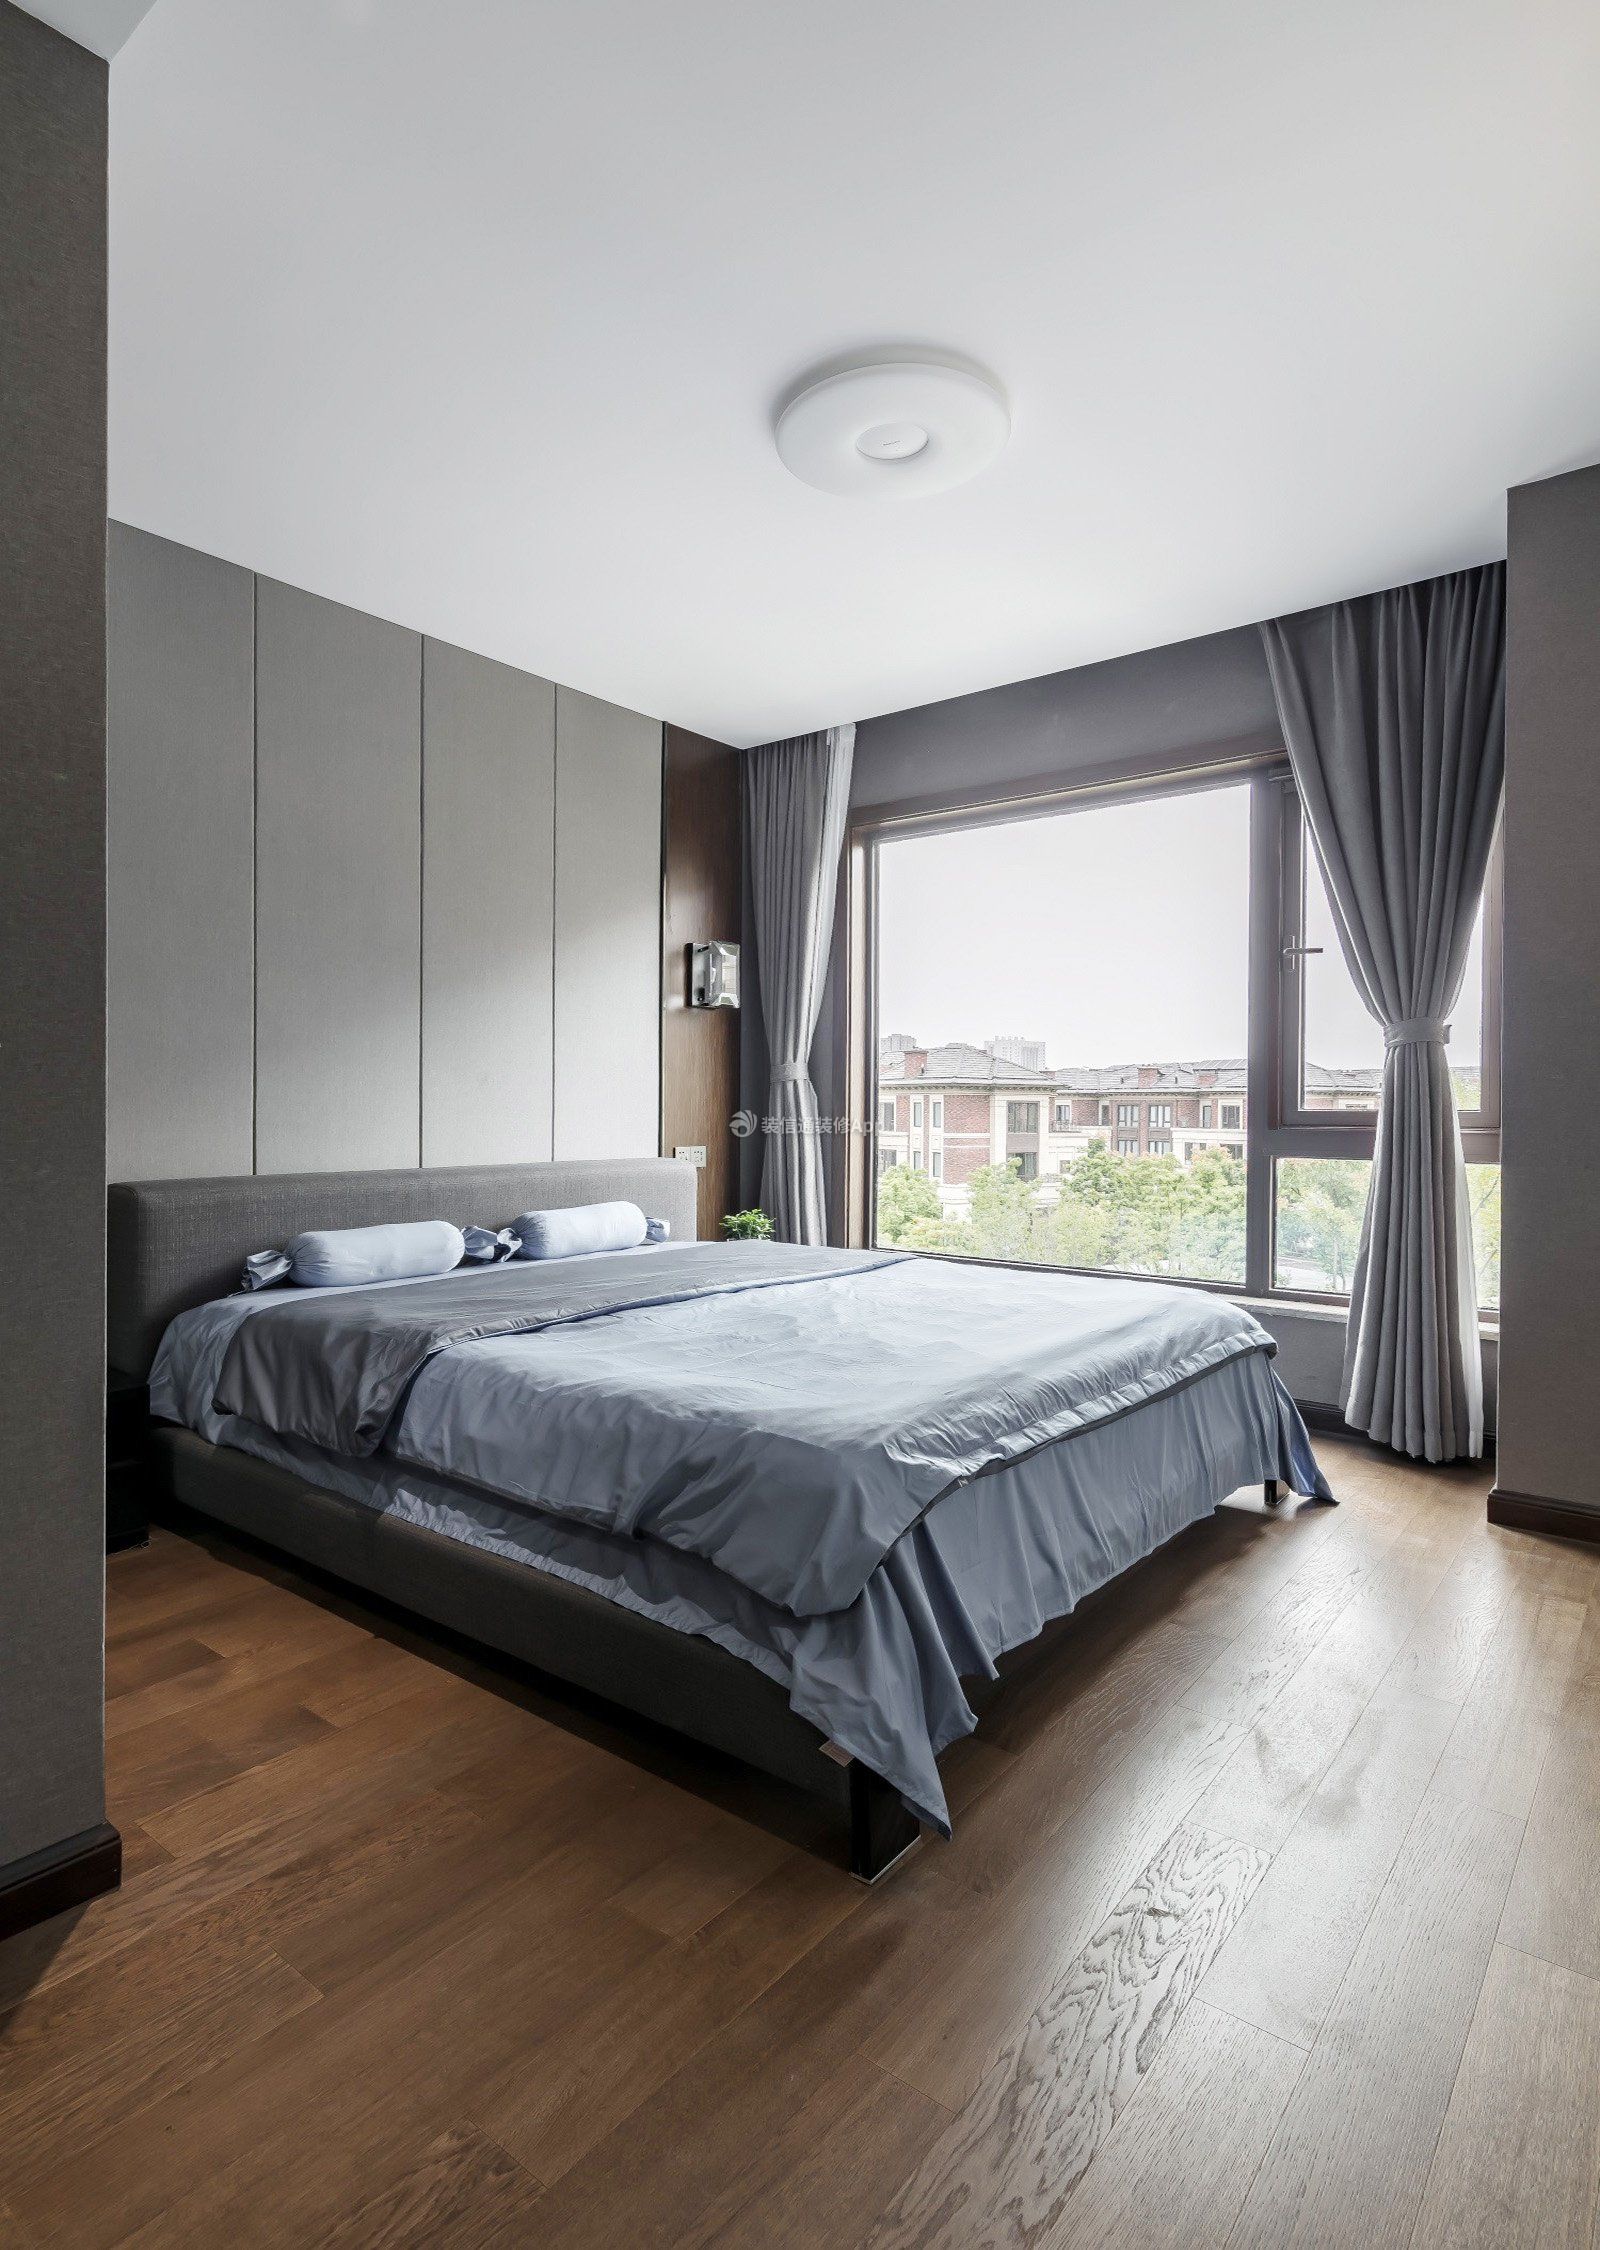 2017美式风格温馨卧室灰色窗帘装修效果图片 – 设计本装修效果图